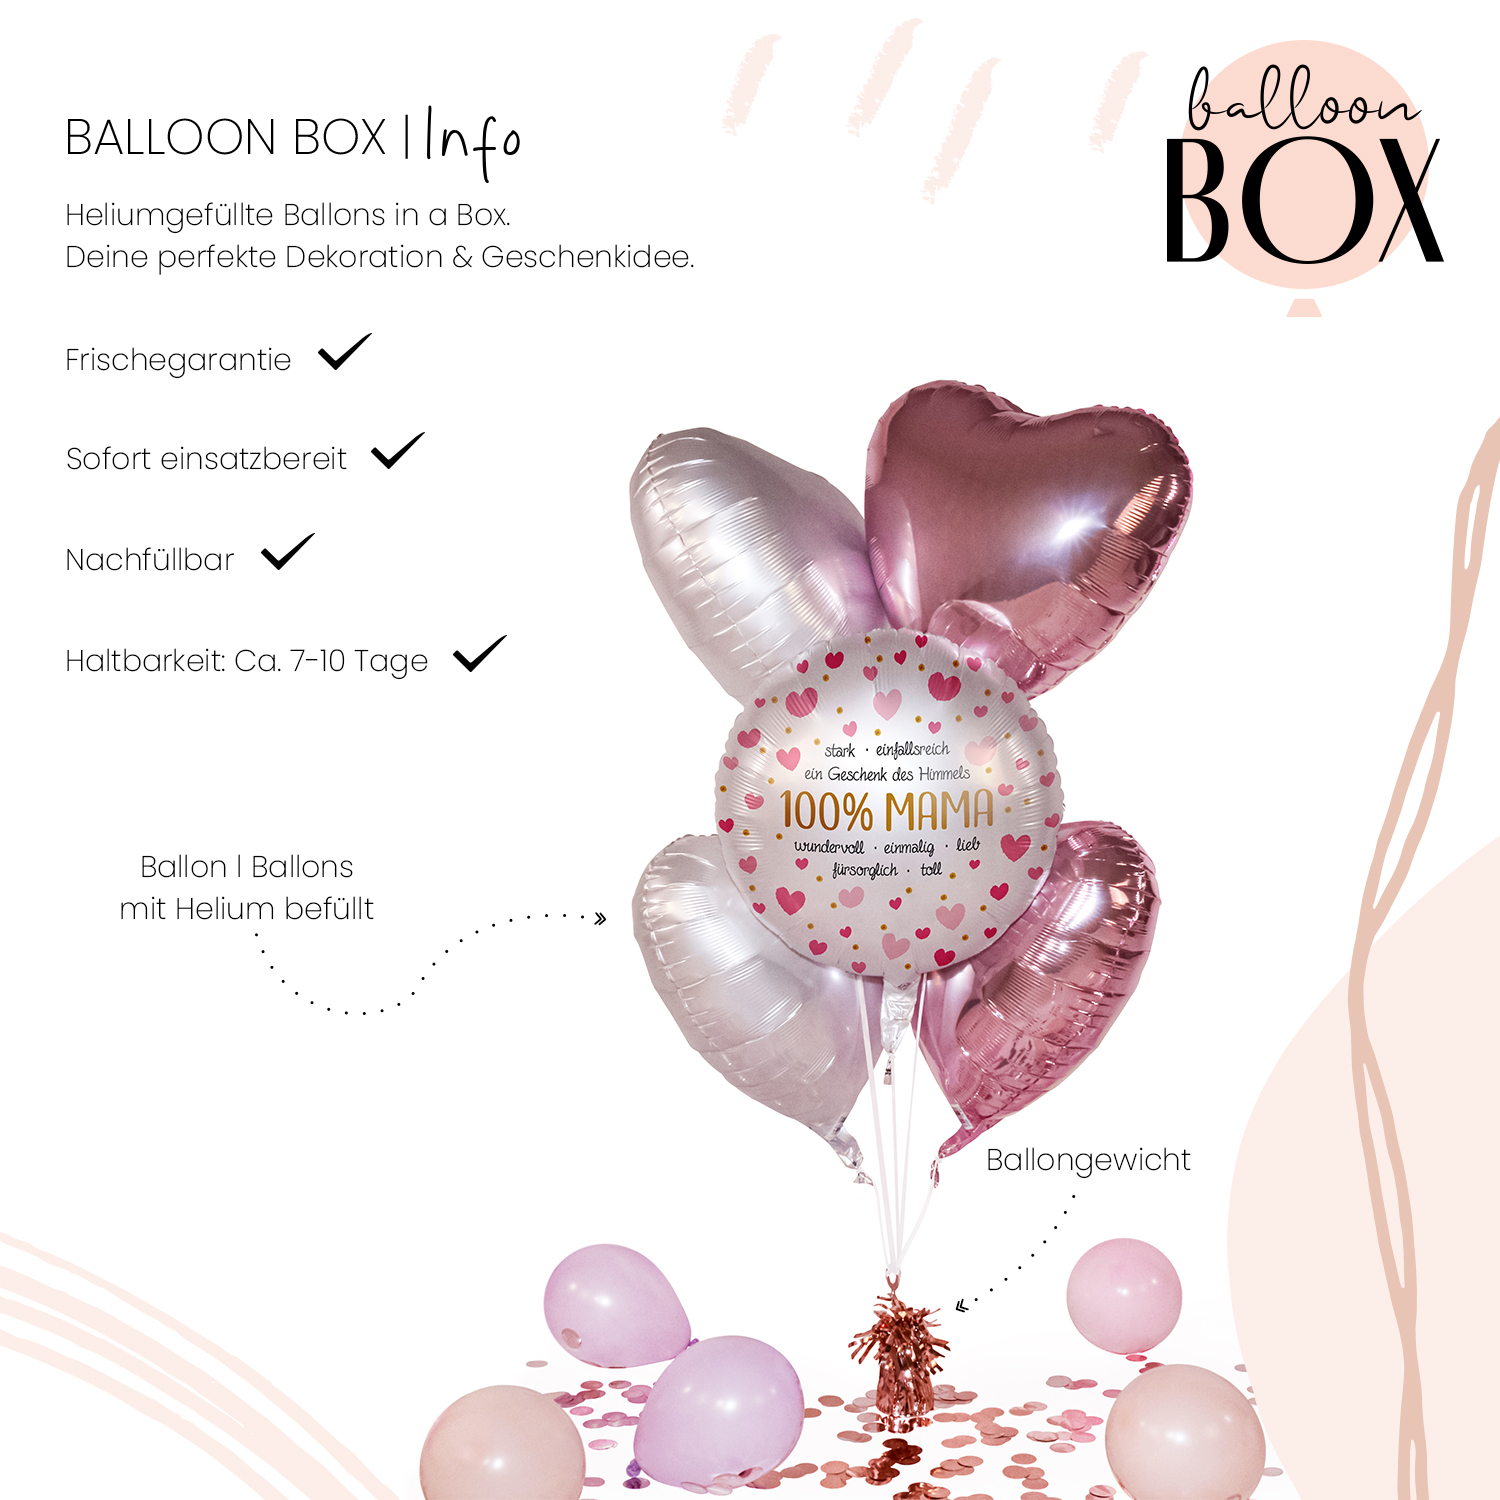 Heliumballon in a Box - 100% Mama